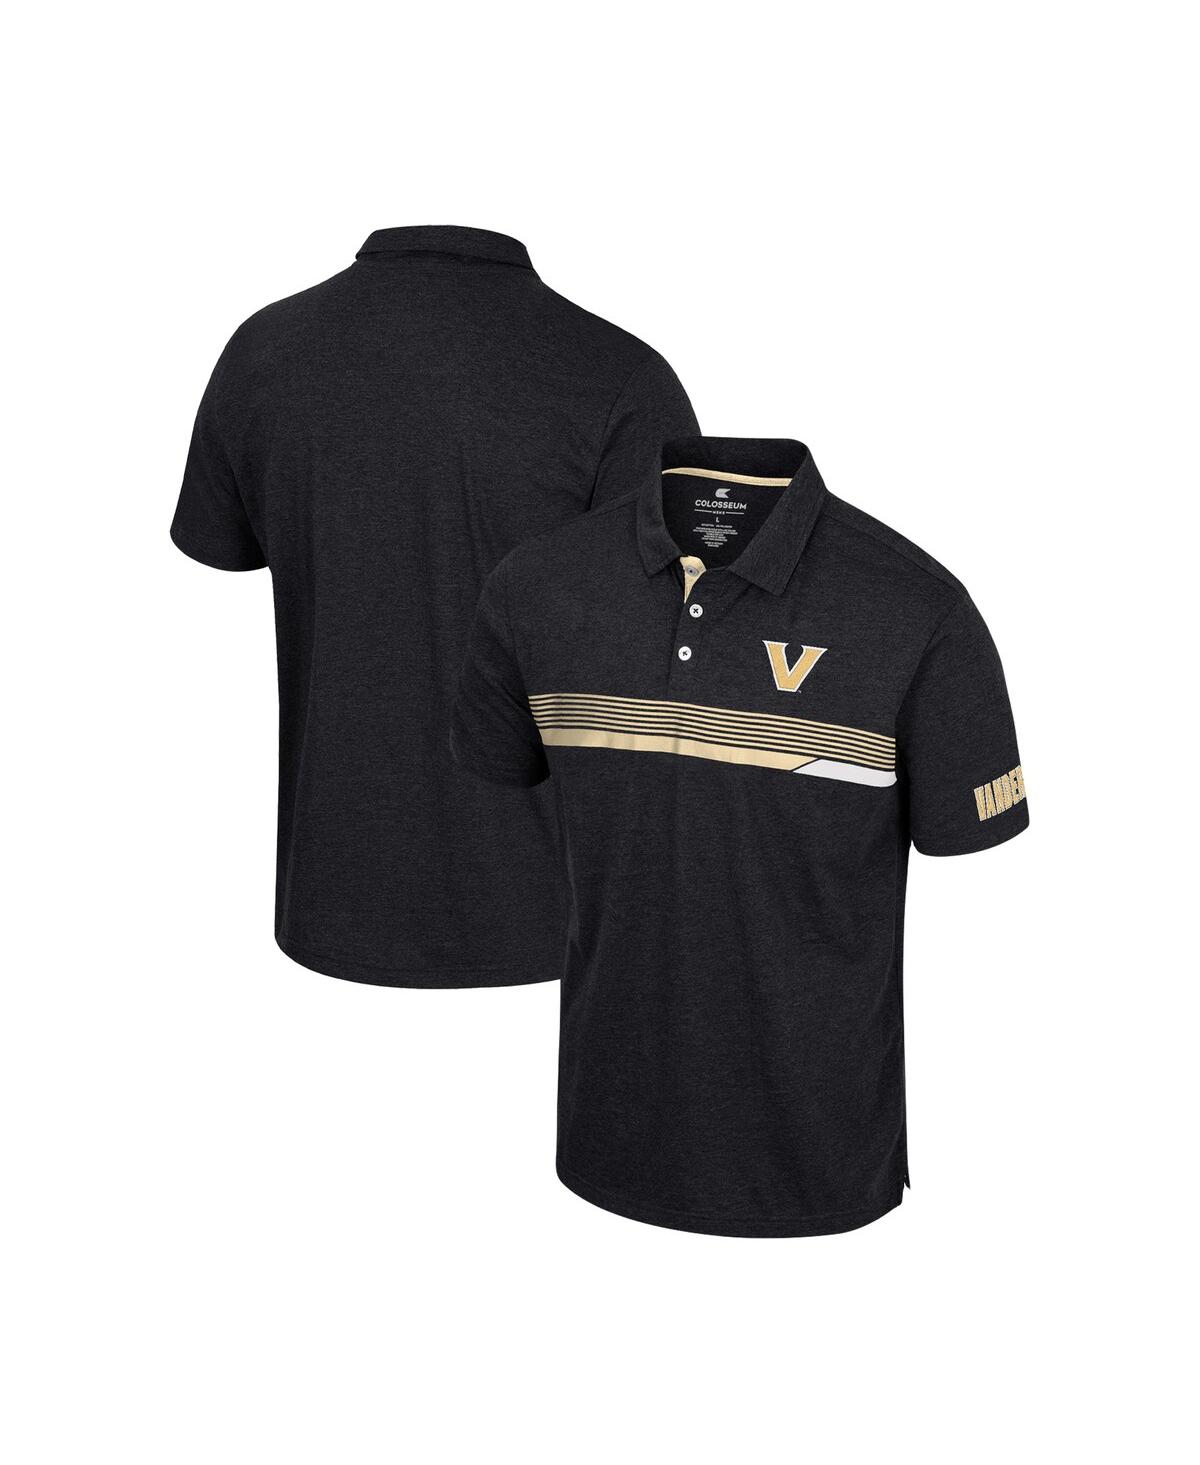 Shop Colosseum Men's  Black Vanderbilt Commodores No Problemo Polo Shirt